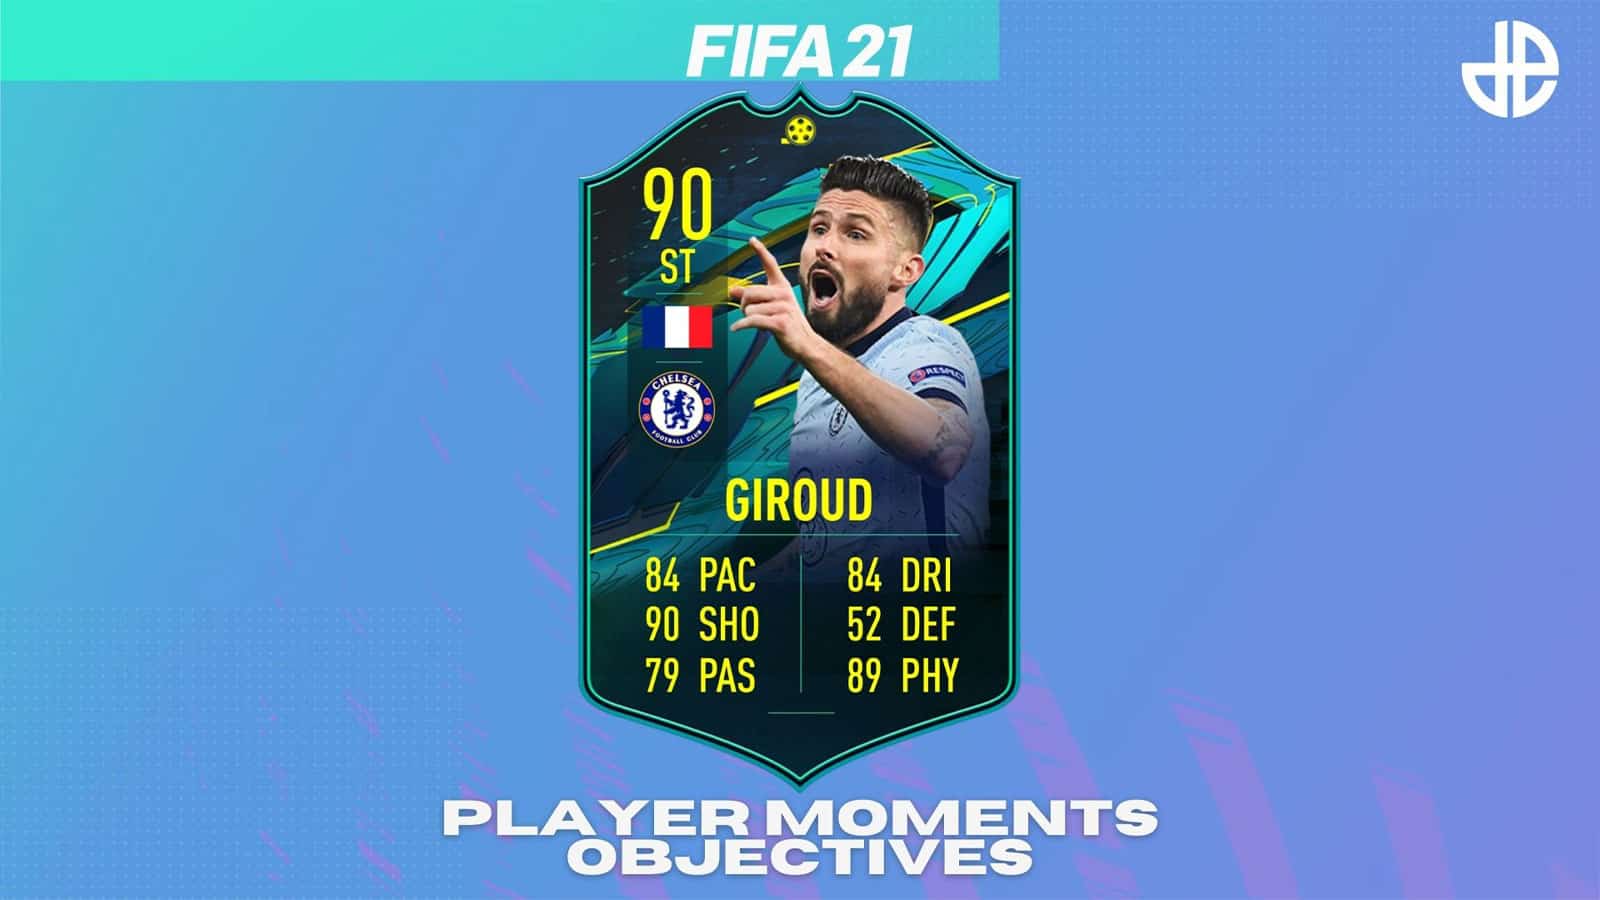 Giroud Player Moments